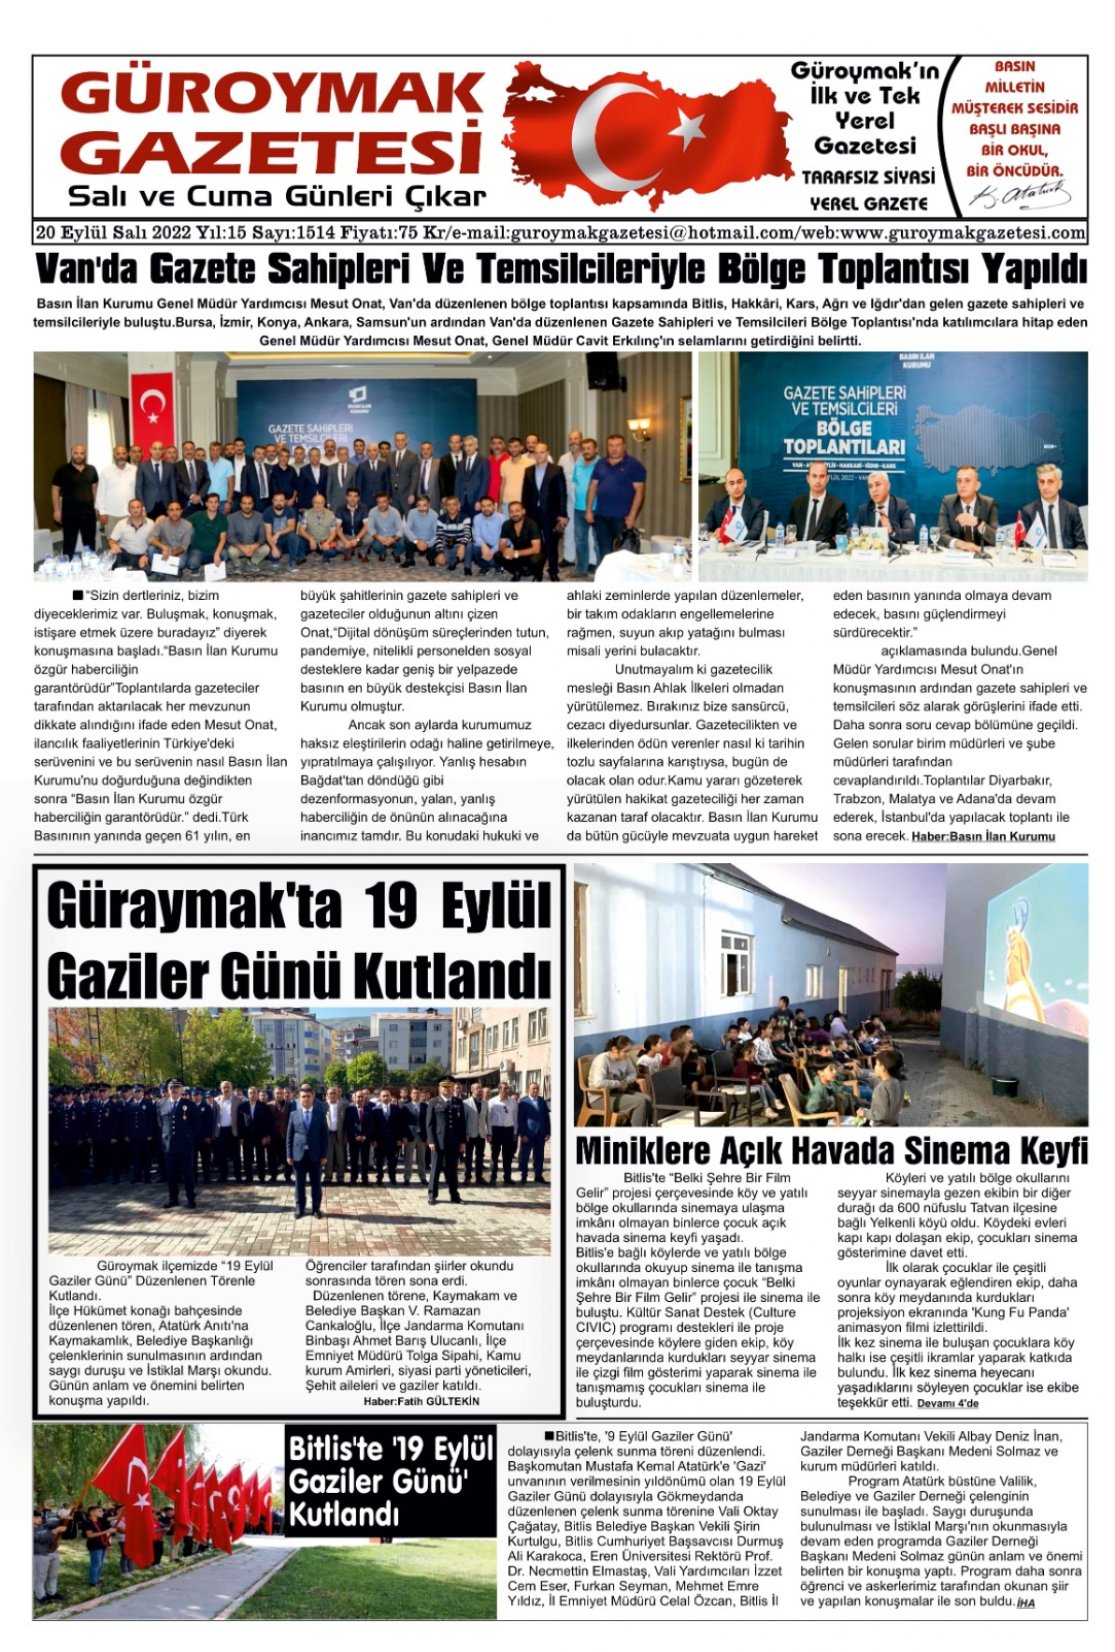 Güroymak Gazetesi WhatsApp Image 2022-09-20 at 09.25.12.jpeg Sayılı Gazete Küpürü